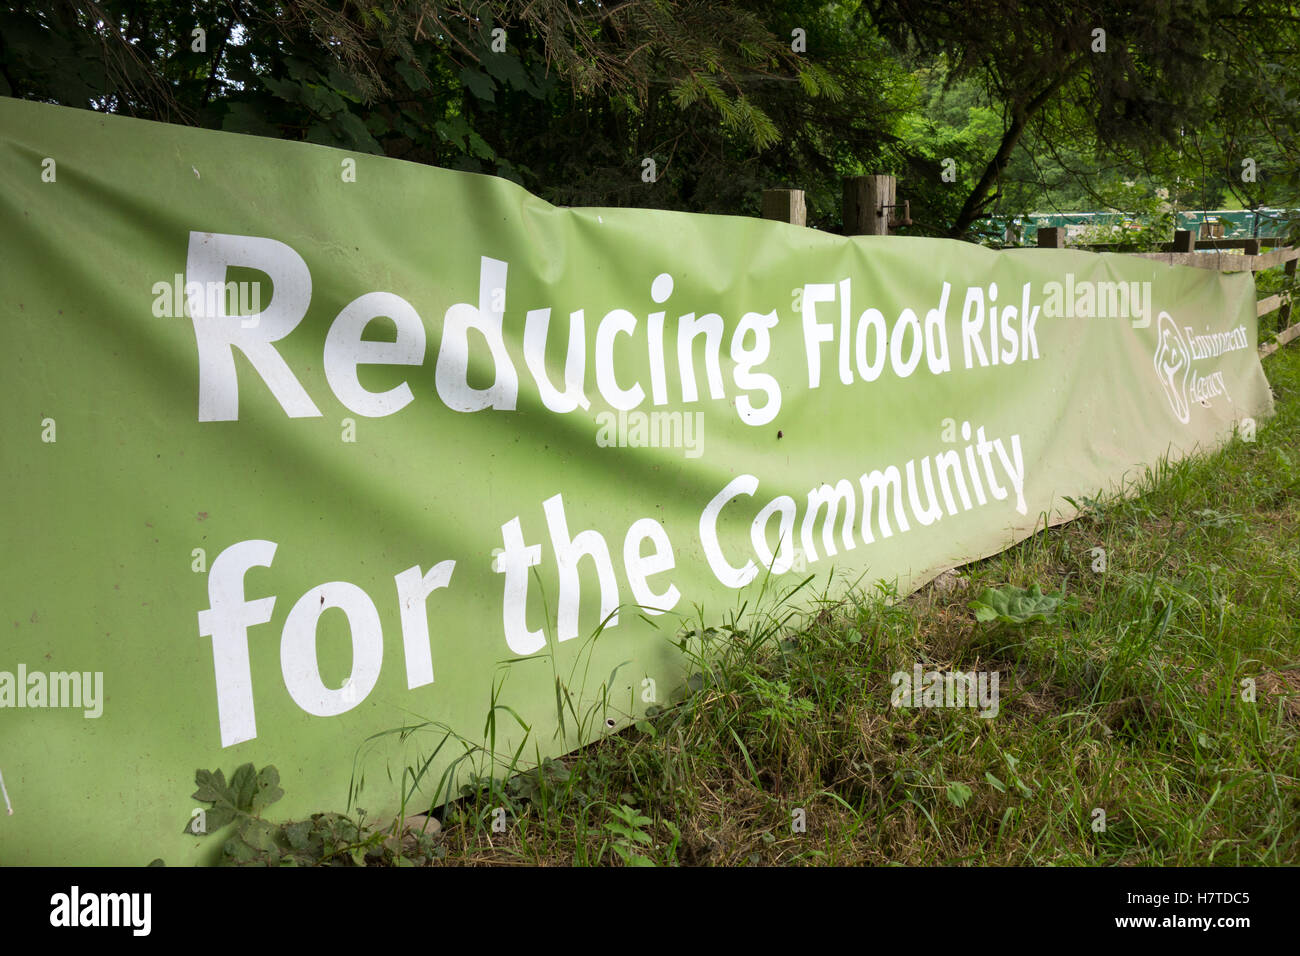 Agenzia per l'ambiente firmare la riduzione dei rischi di inondazione per la comunità, Pickering, Inghilterra Foto Stock